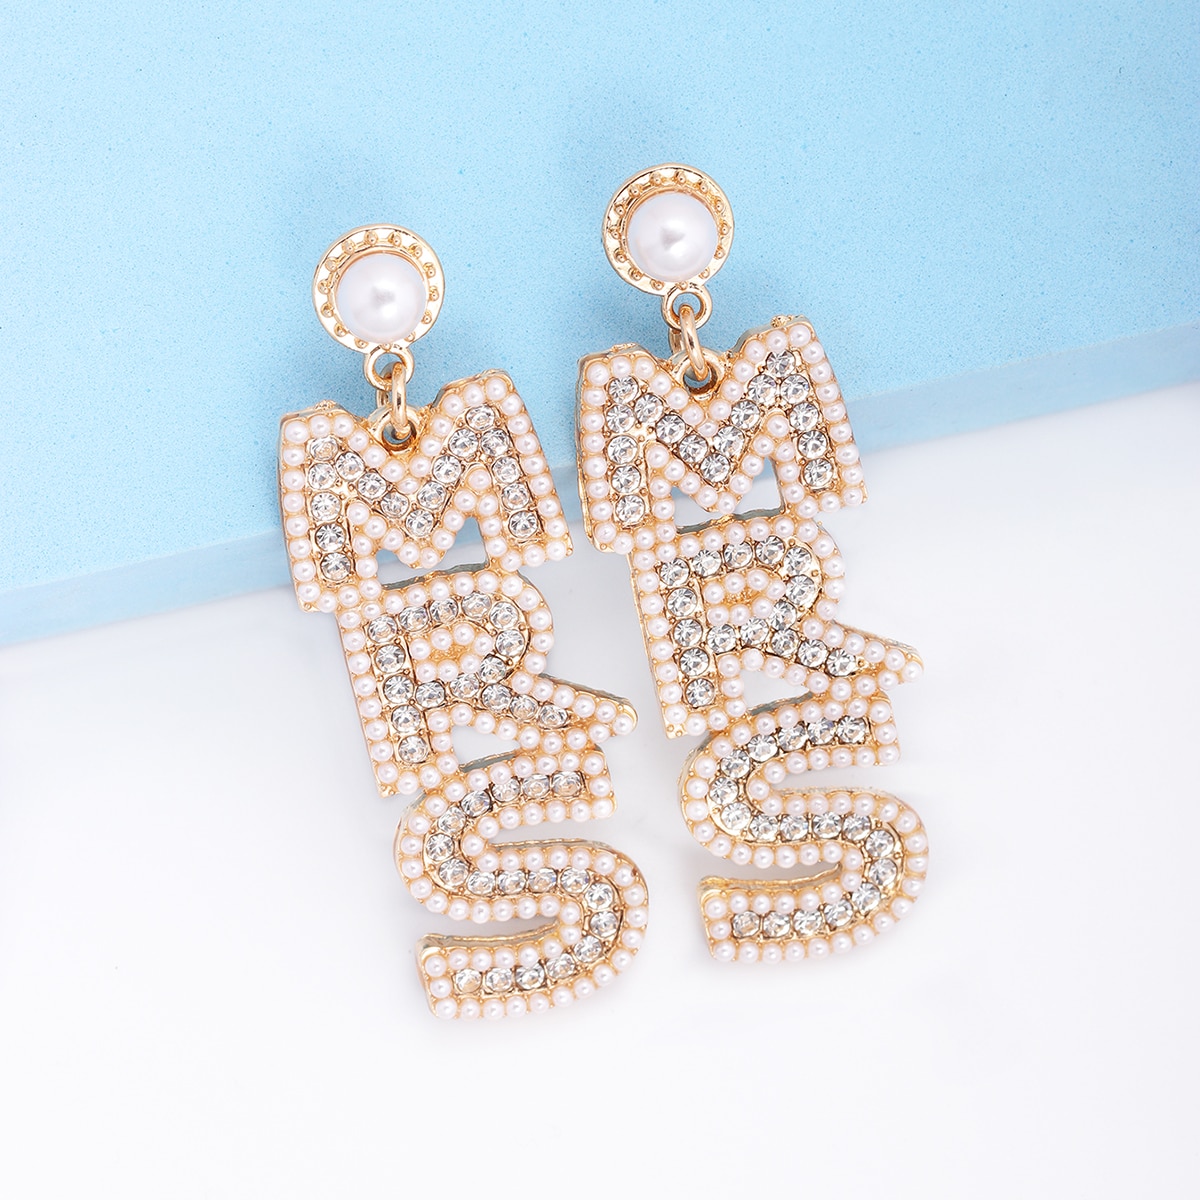 New Letter MRS Earrings Trendy Pearl Rhinestone Earrings For Women Jewelry Accessories Gift